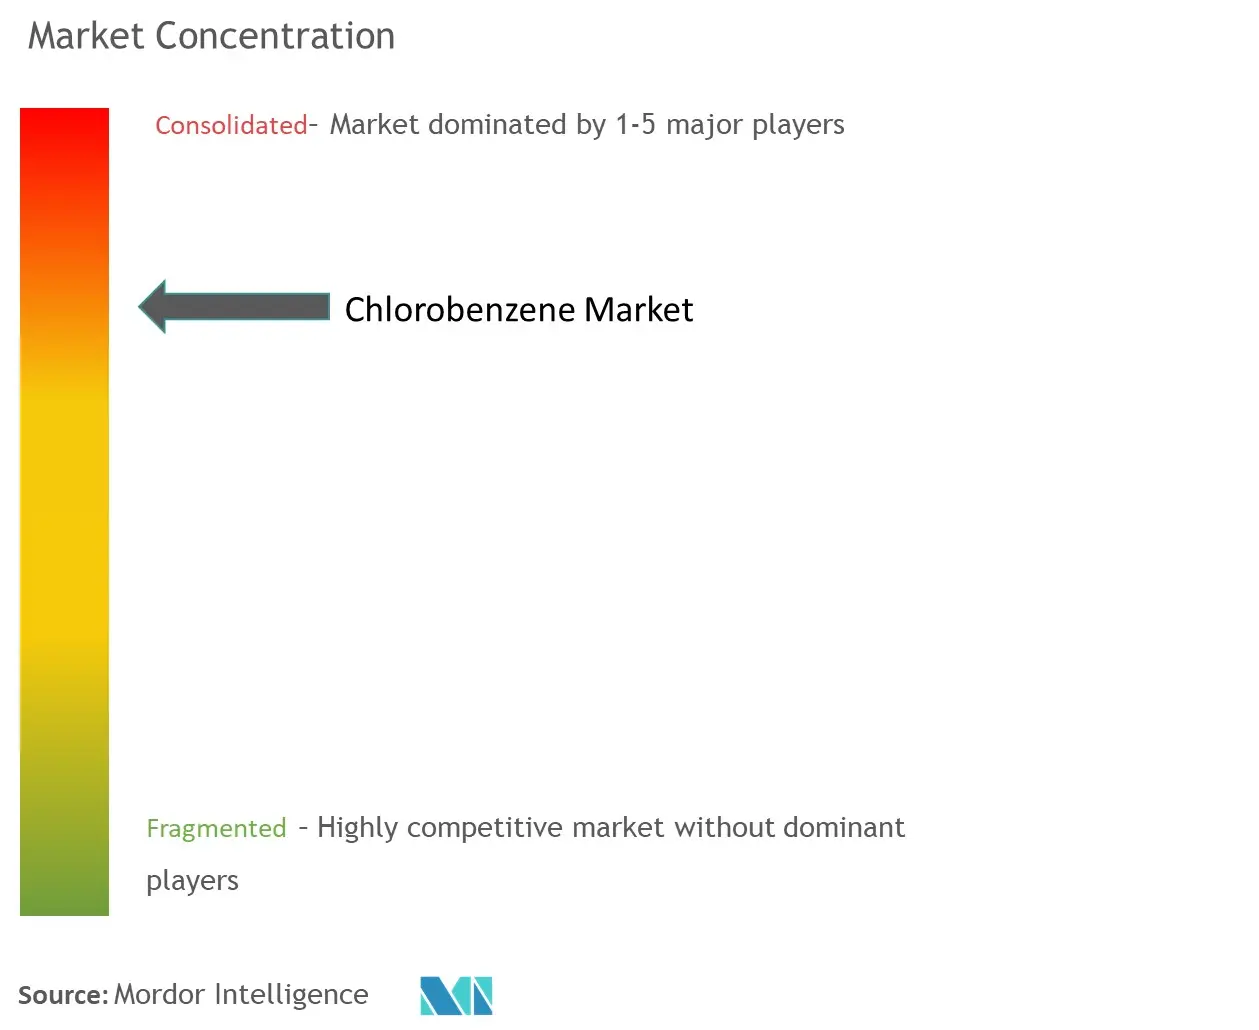 Chlorobenzene Market Concentration